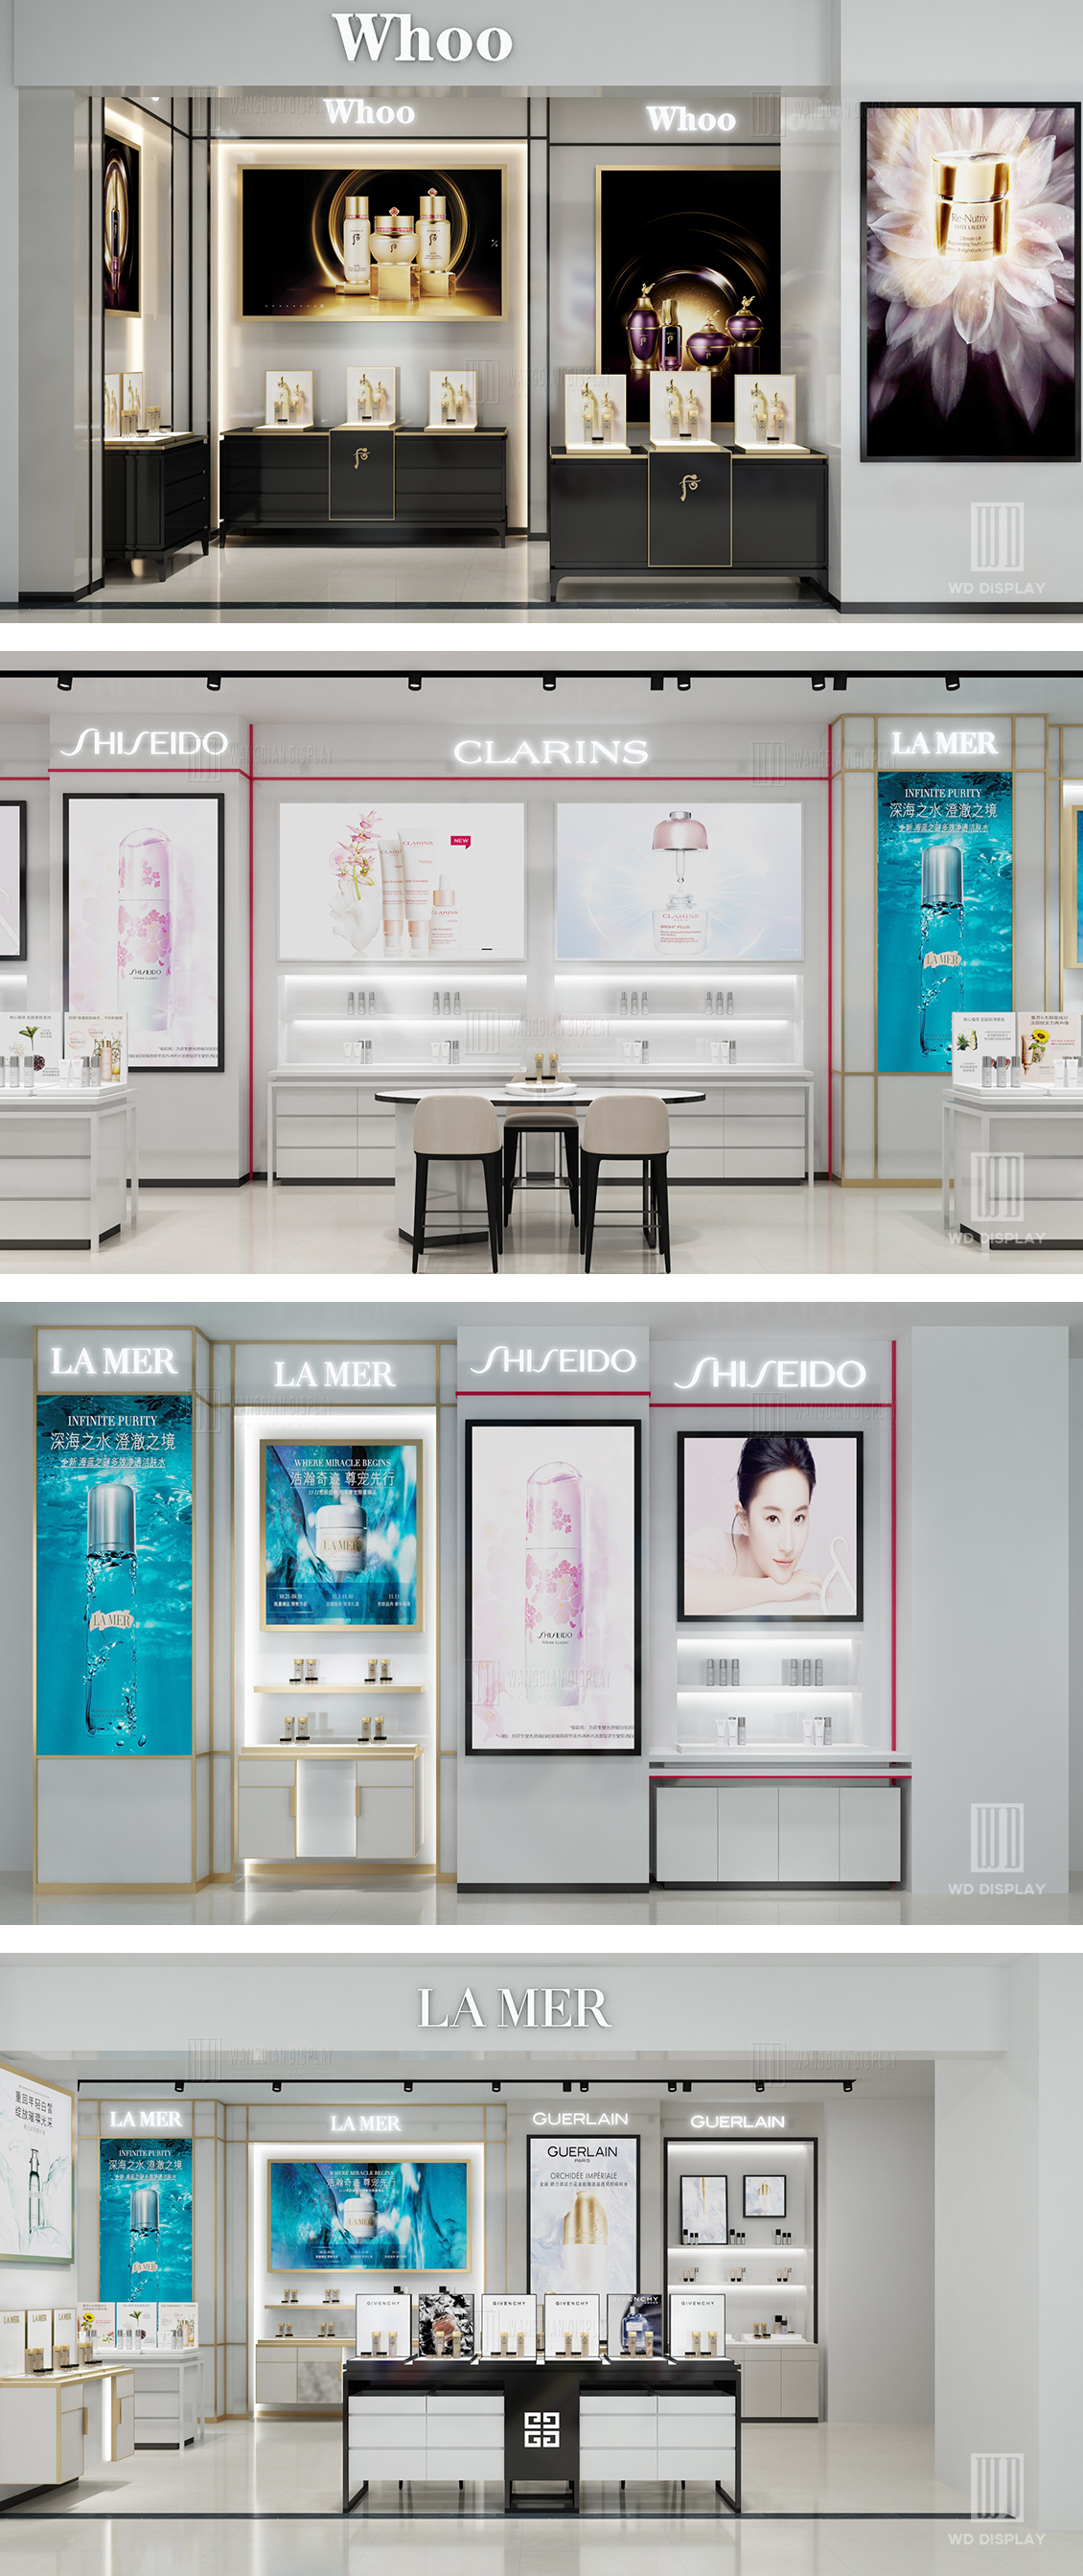 cosmetics store interior design project